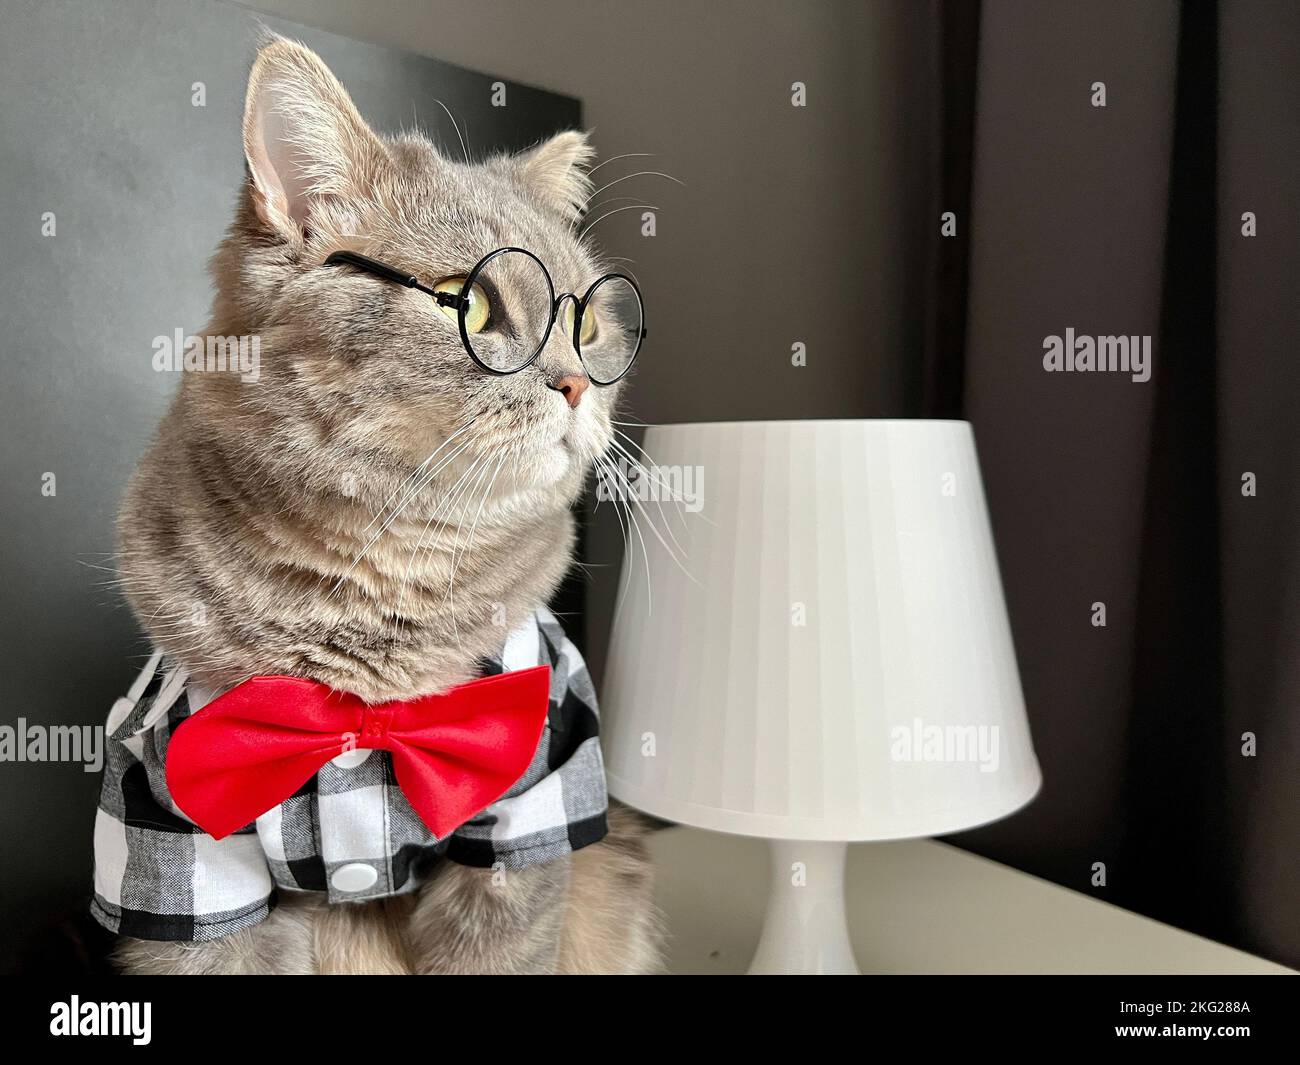 Eine schottische geradohrige graue Katze mit Brille, einem schwarz-weißen Hemd und einer roten Krawatte sieht aus wie ein Boss. Haustiere in einem gemütlichen, modernen Apartment Stockfoto